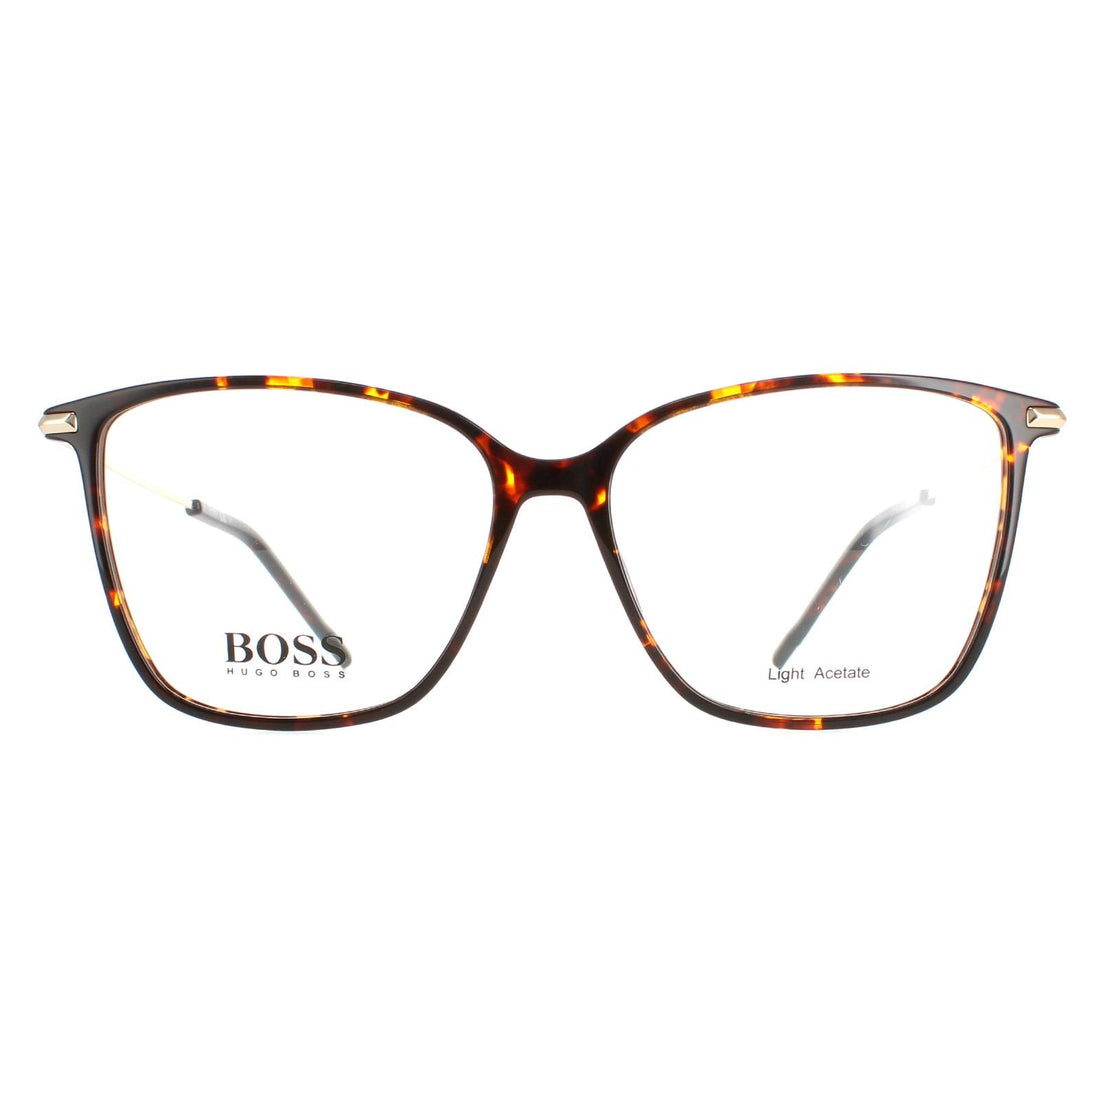 Hugo Boss Glasses Frames BOSS 1330 086 Havana Gold Women